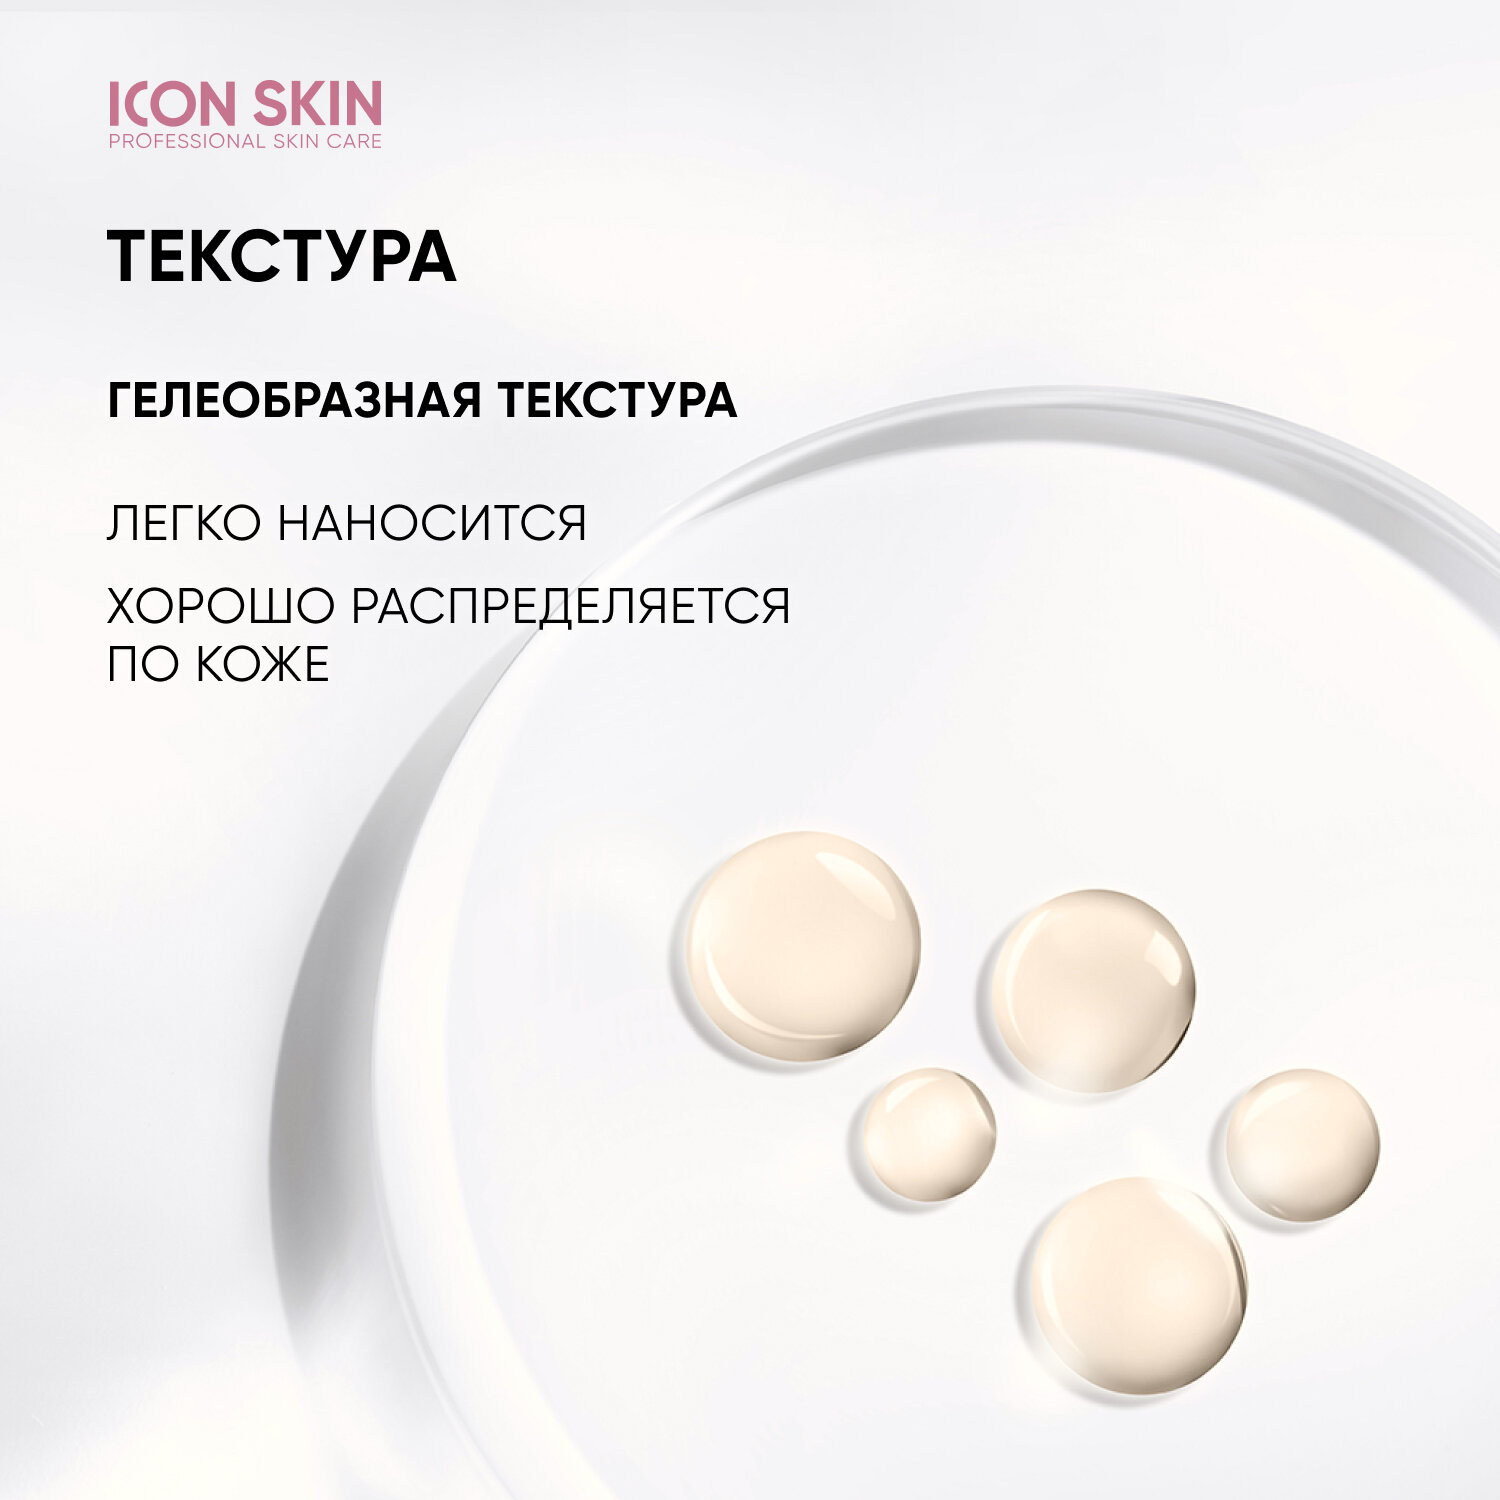 ICON SKIN / Миндальный 25% пилинг для лица. Интенсивный. Для всех типов кожи. Проф. уход. 30 мл